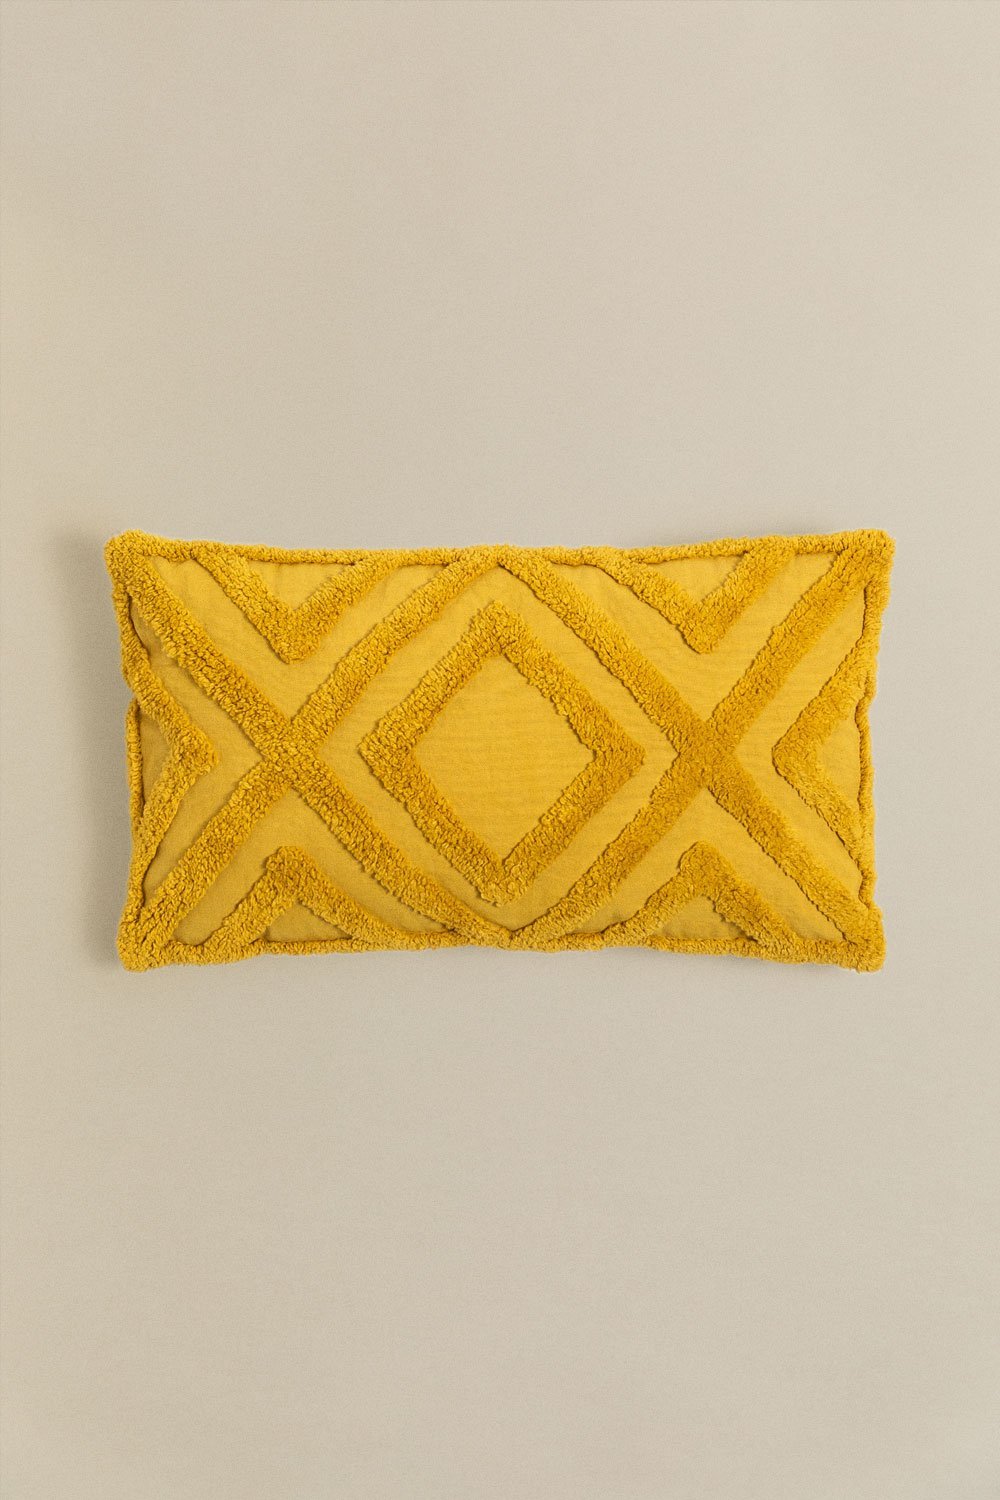 Cuscino rettangolare in cotone (30x50 cm) Jerry, immagine della galleria 1